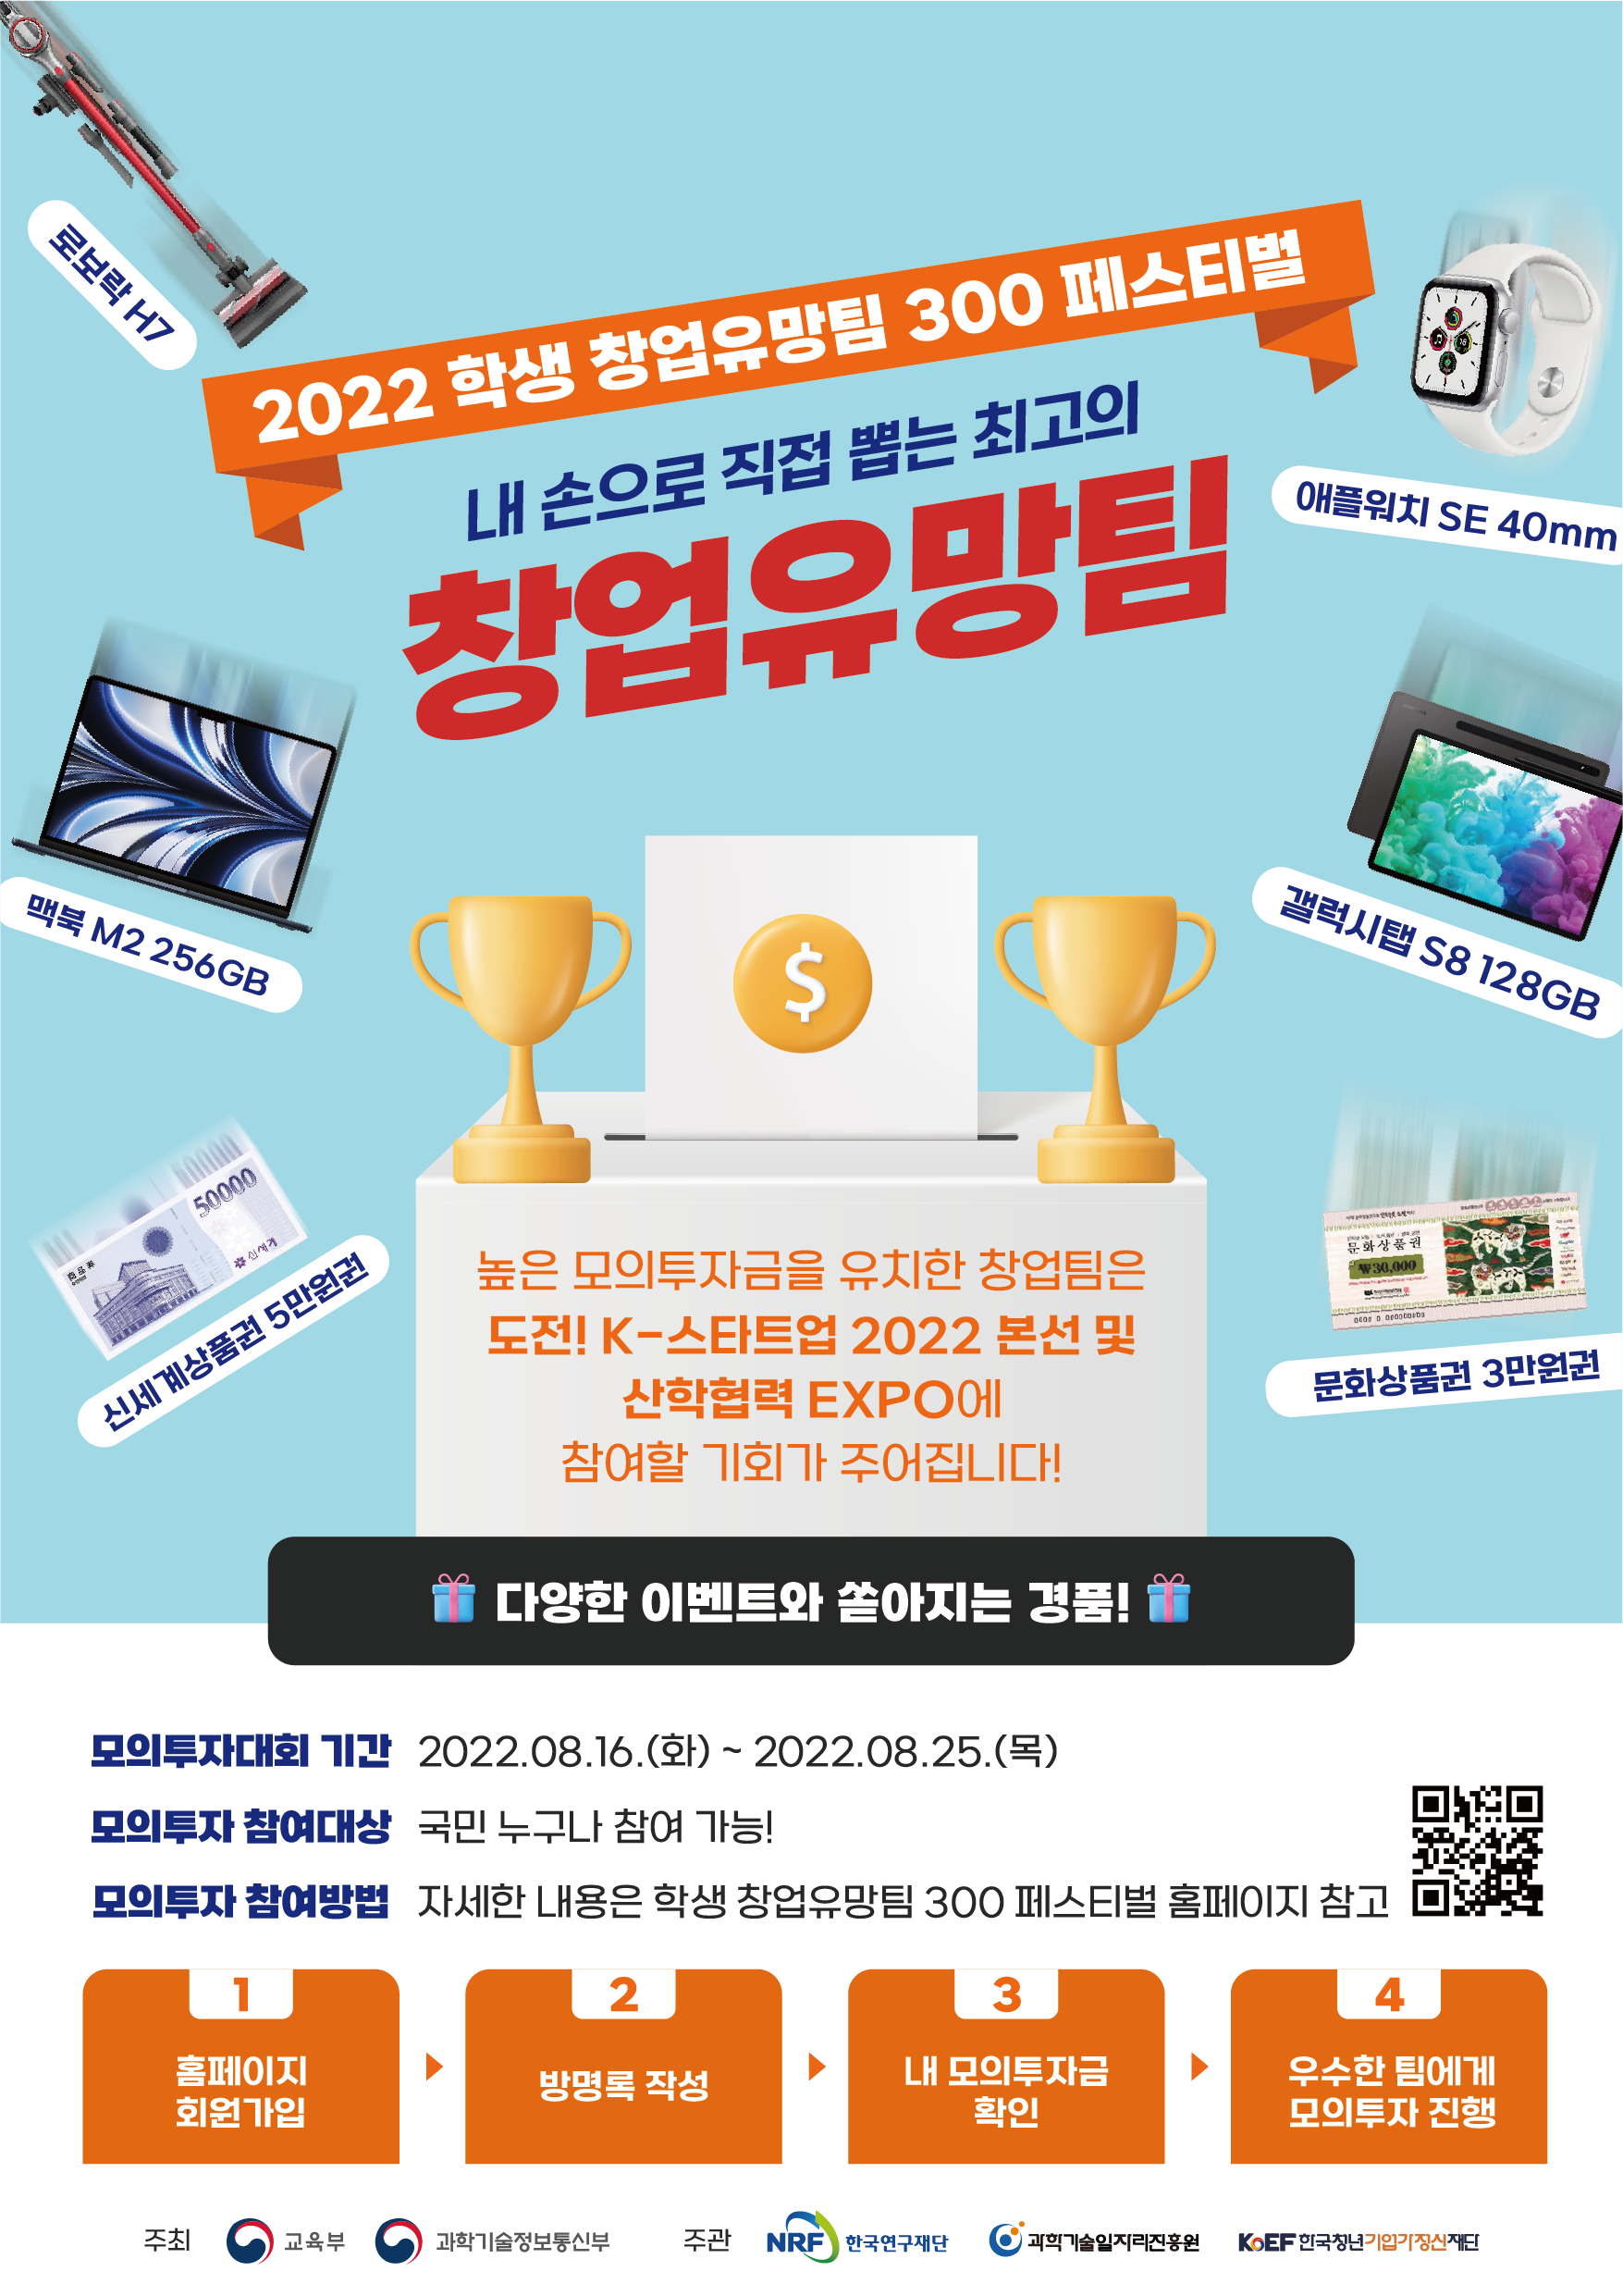 2022 학생 창업유망팀 300 페스티벌 개최 안내